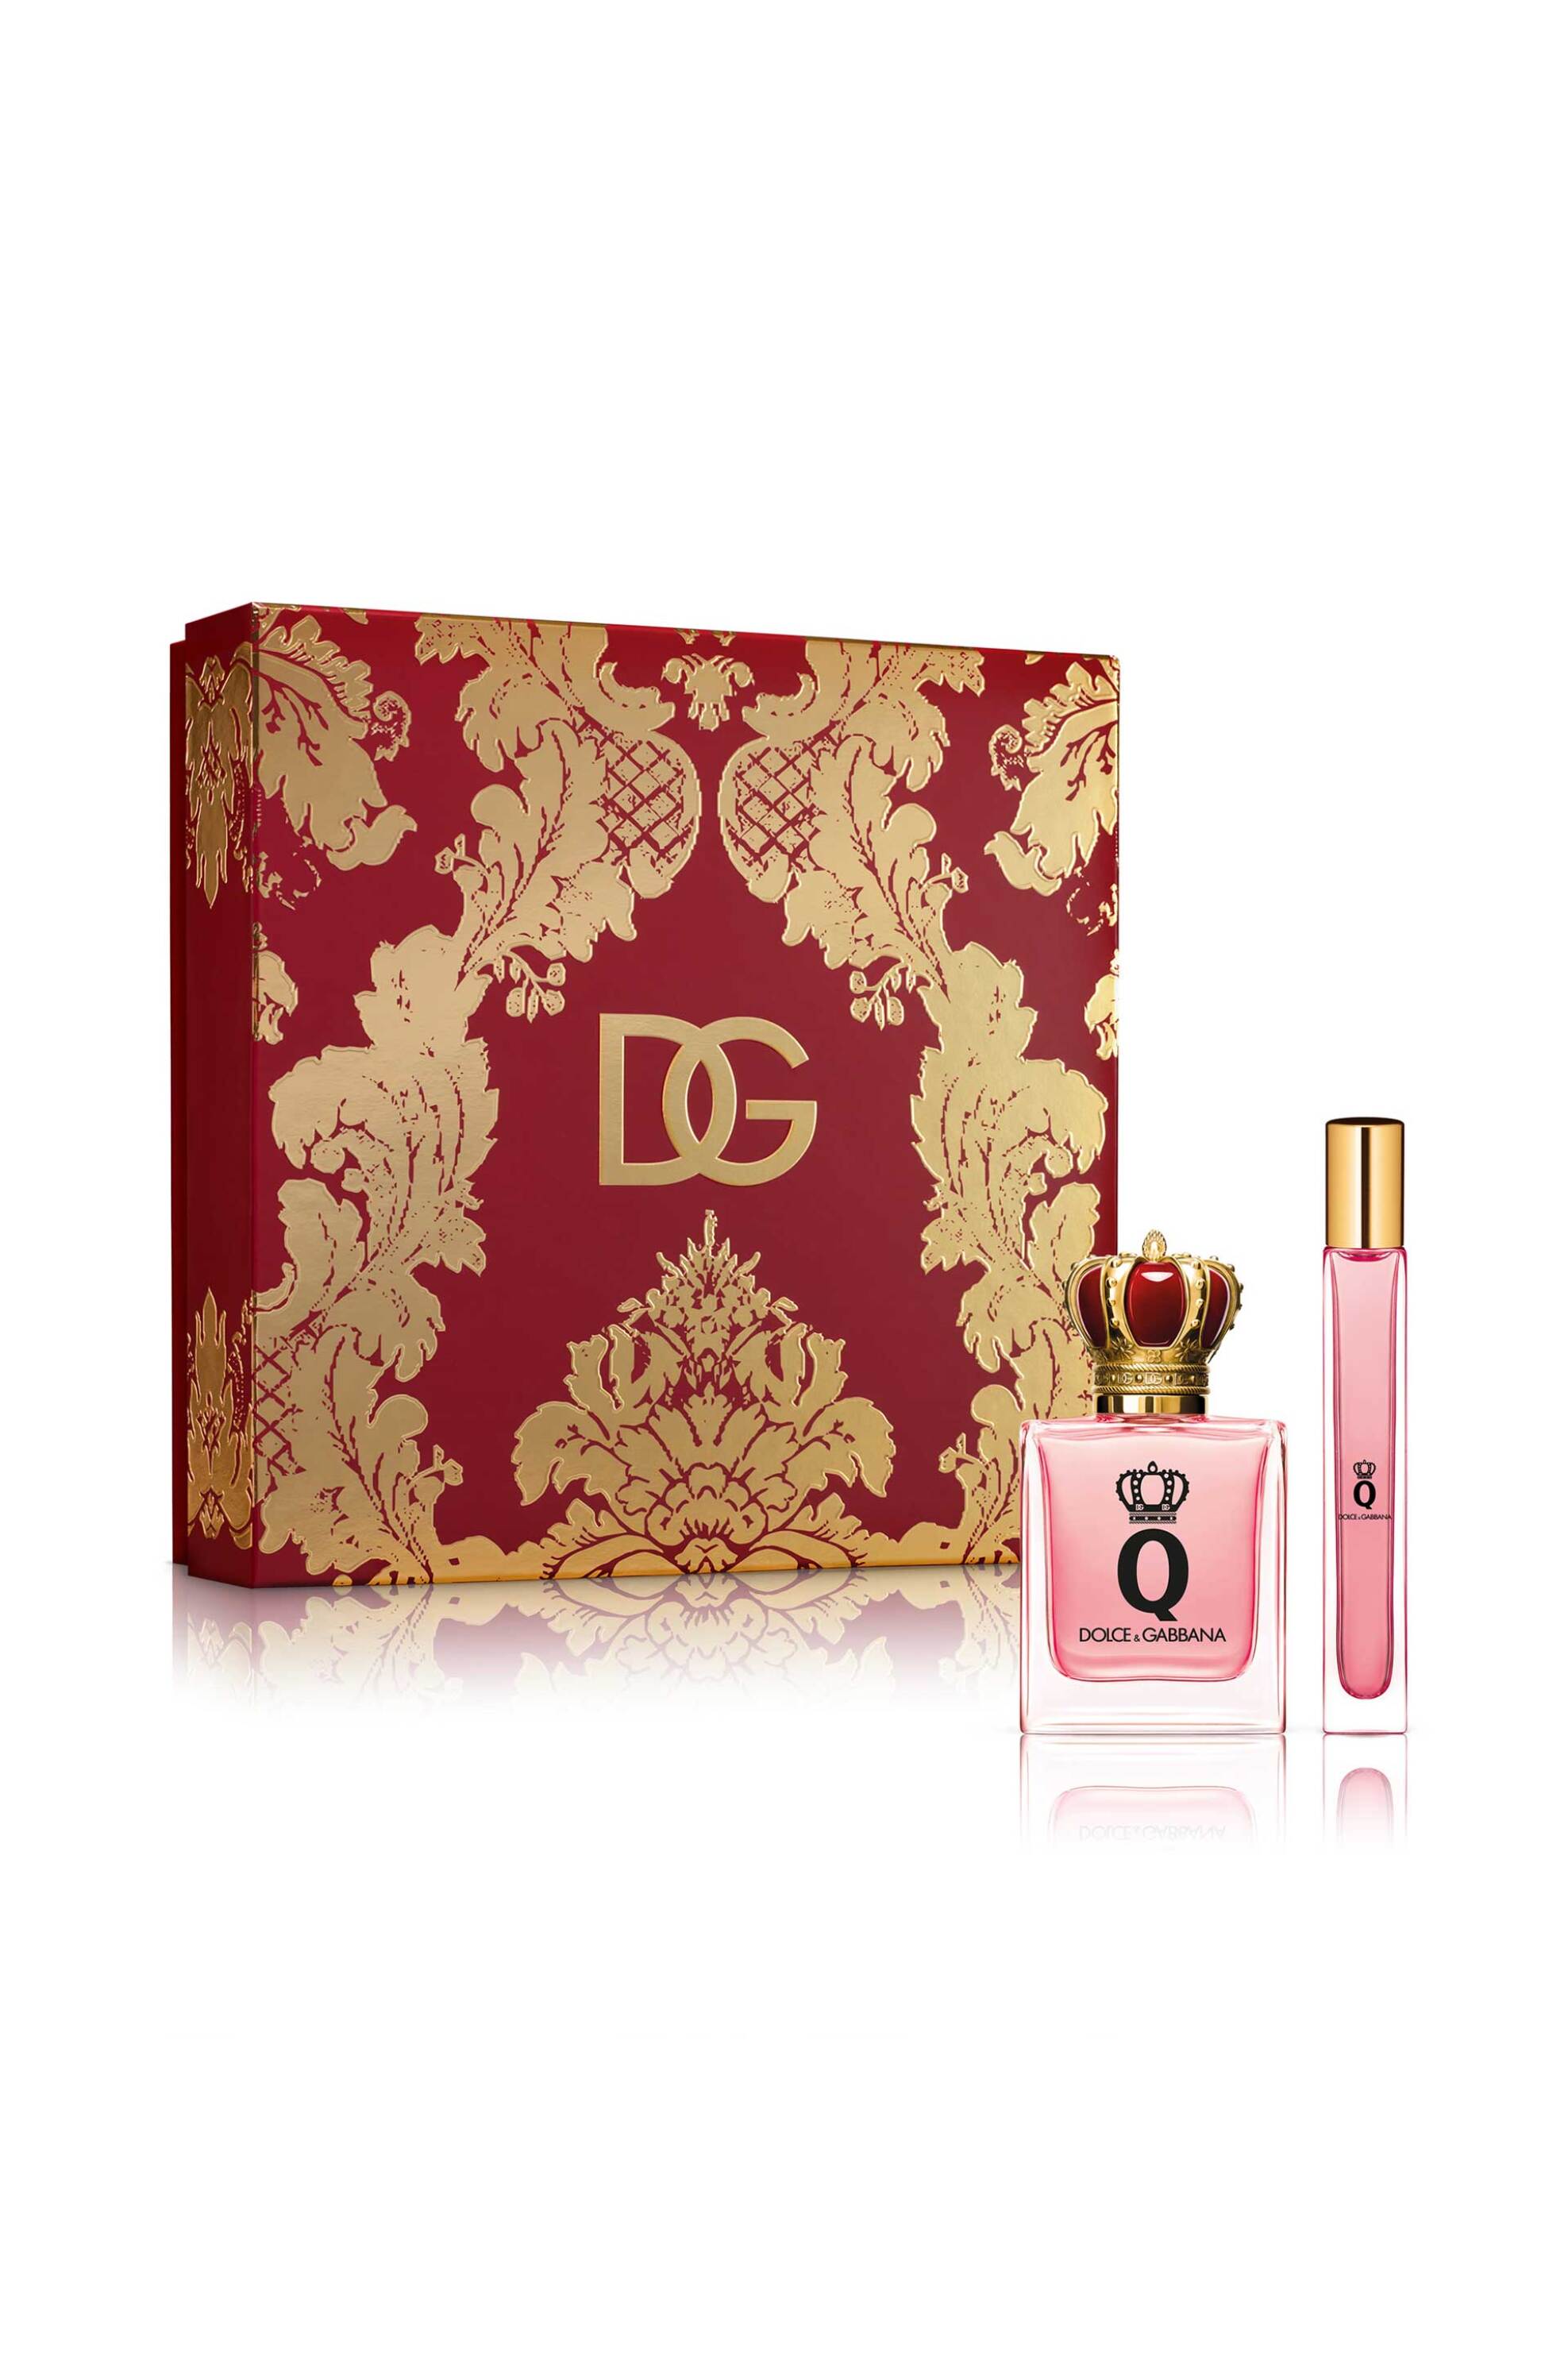 Προϊόντα Ομορφιάς > ΑΡΩΜΑΤΑ > Γυναικεία Αρώματα > Σετ Αρωμάτων Dolce&Gabbana Q by Dolce&Gabbana Eau de Parfum Gift Set - P1KQ2L02